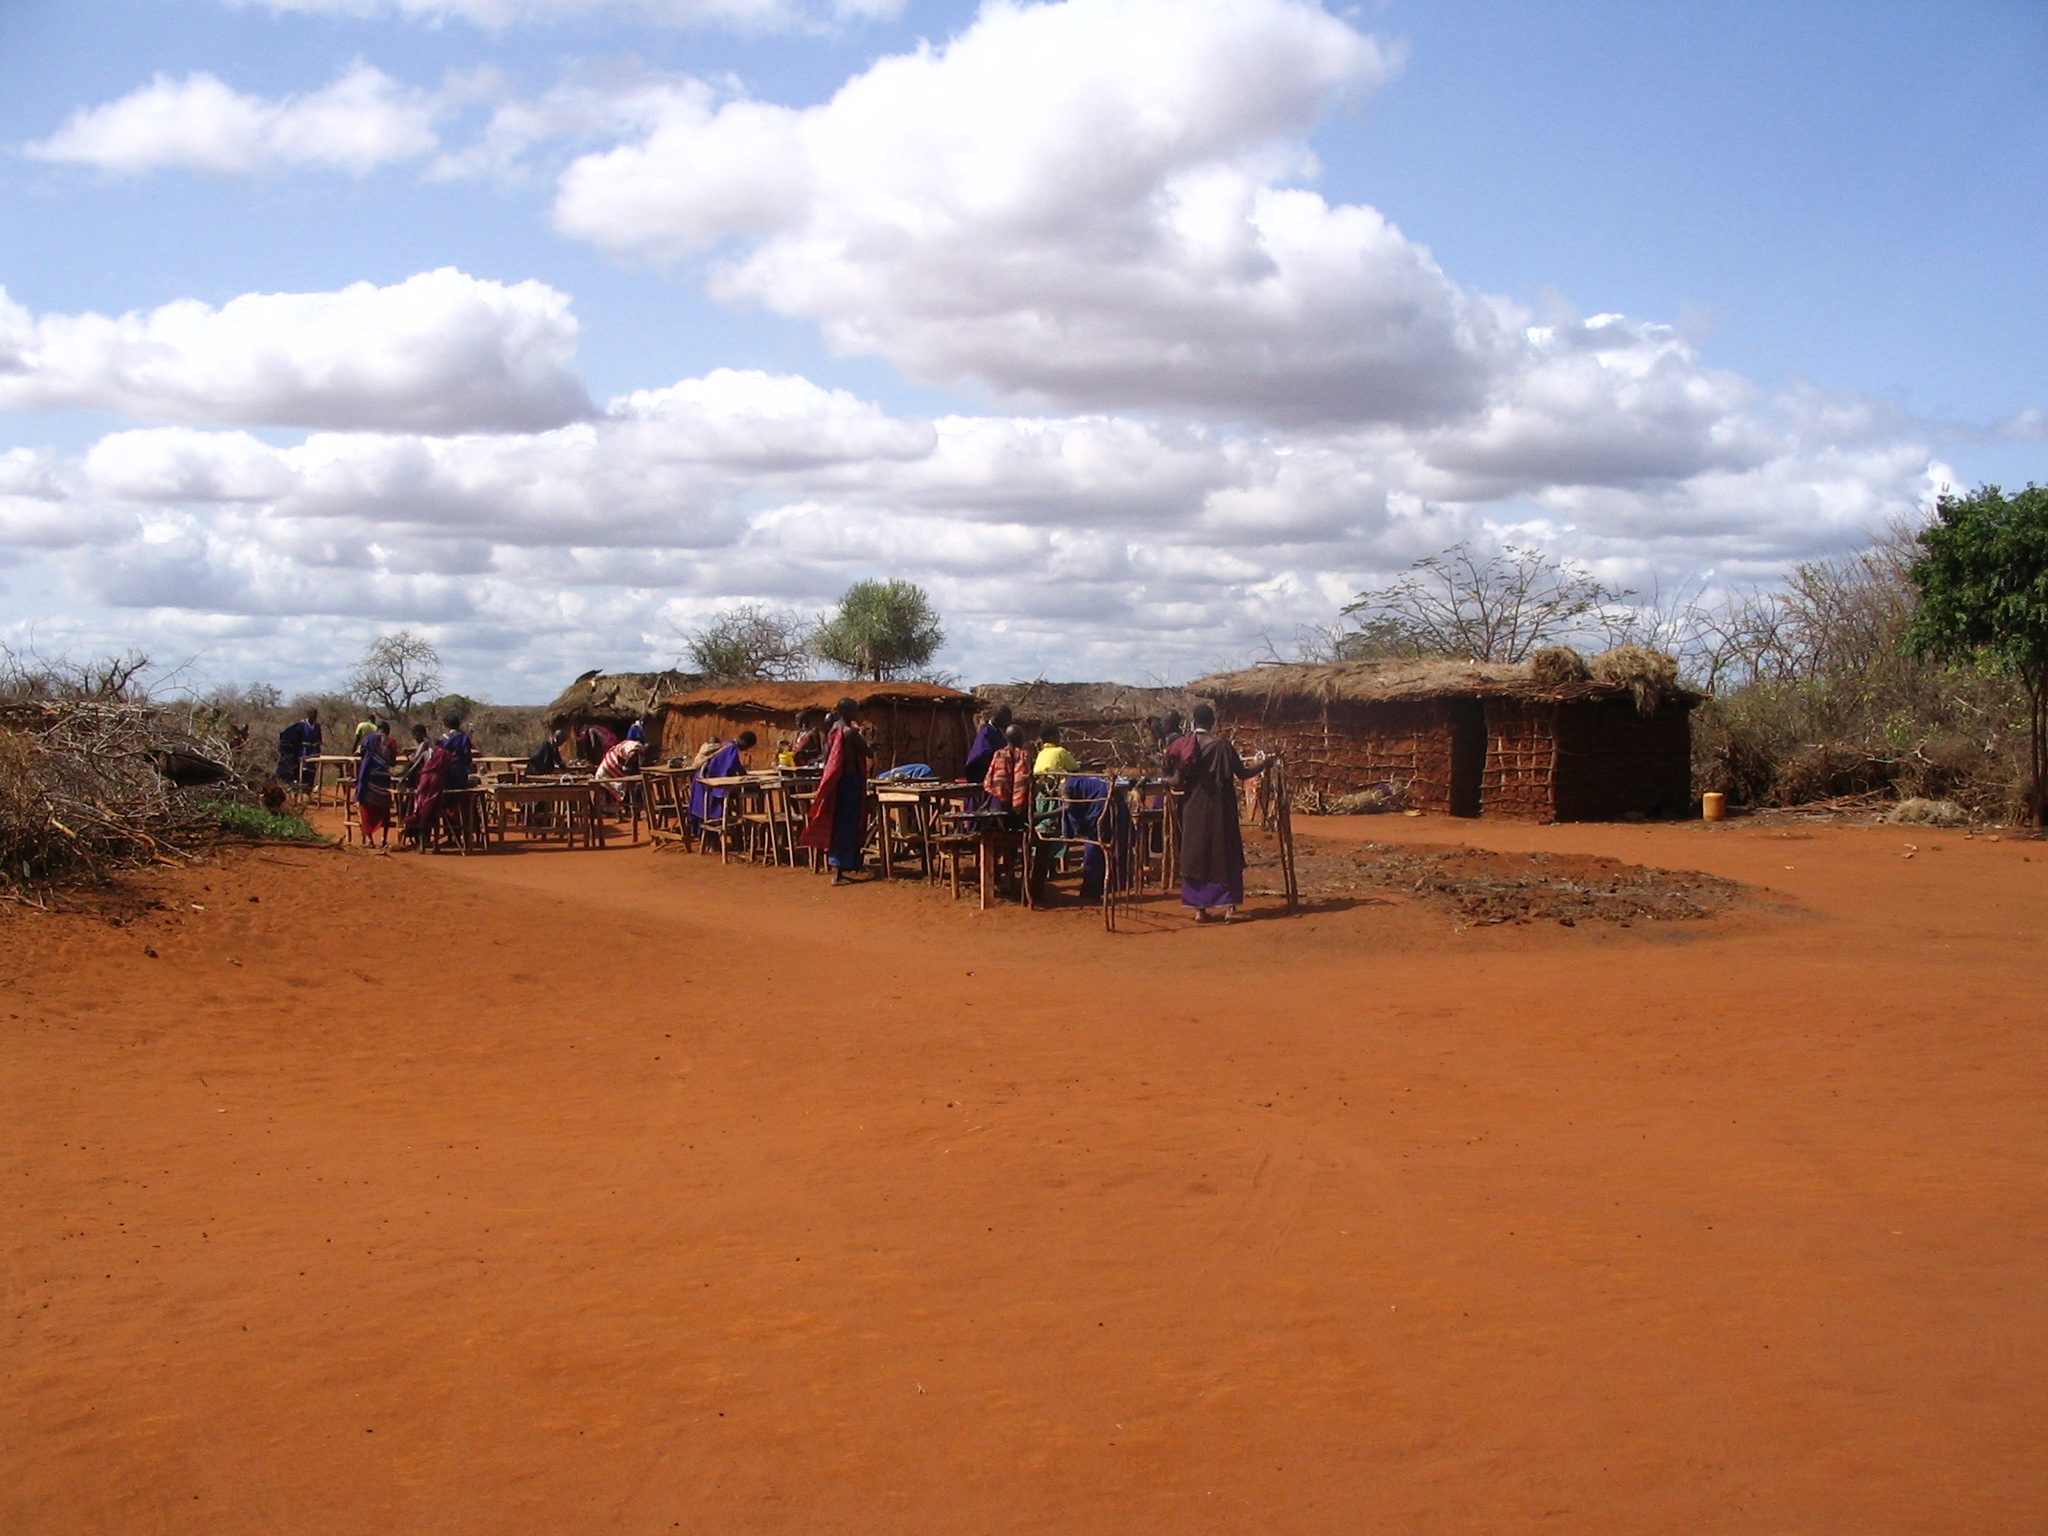 Maasai village on the A109 road, Kenya